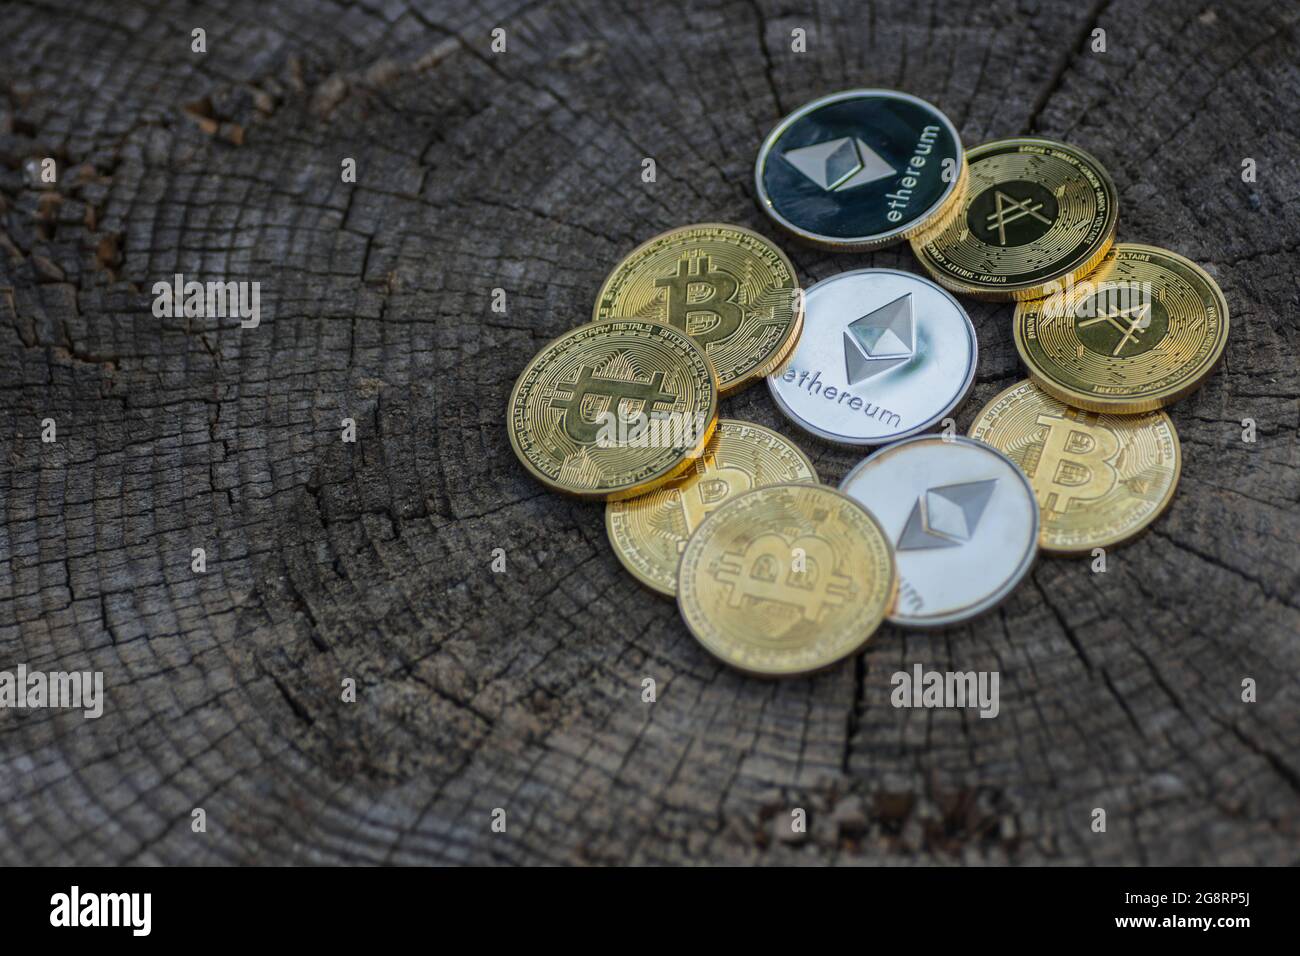 beaucoup de pièces d'or et d'argent valant l'éther bitcoin et ada de crypto-monnaie se trouvant sur un tronc d'arbre fissuré foncé Banque D'Images